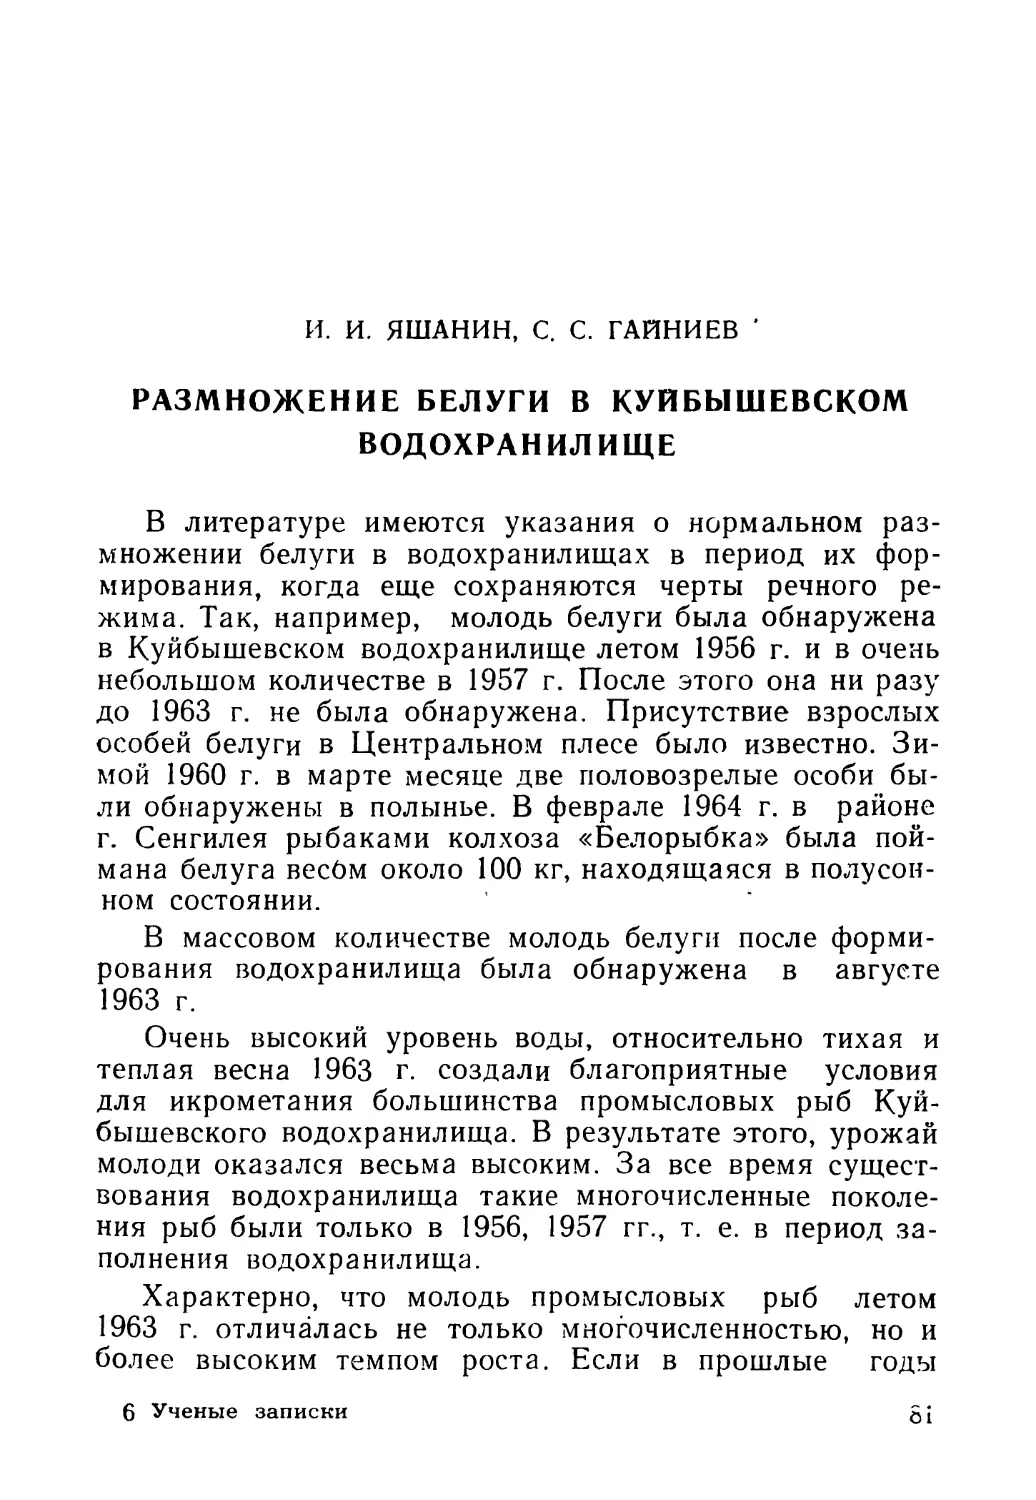 И. И. ЯШАНИН, С. С. ГАЙНИЕВ. Размножение белуги в Куйбышевском водохранилище